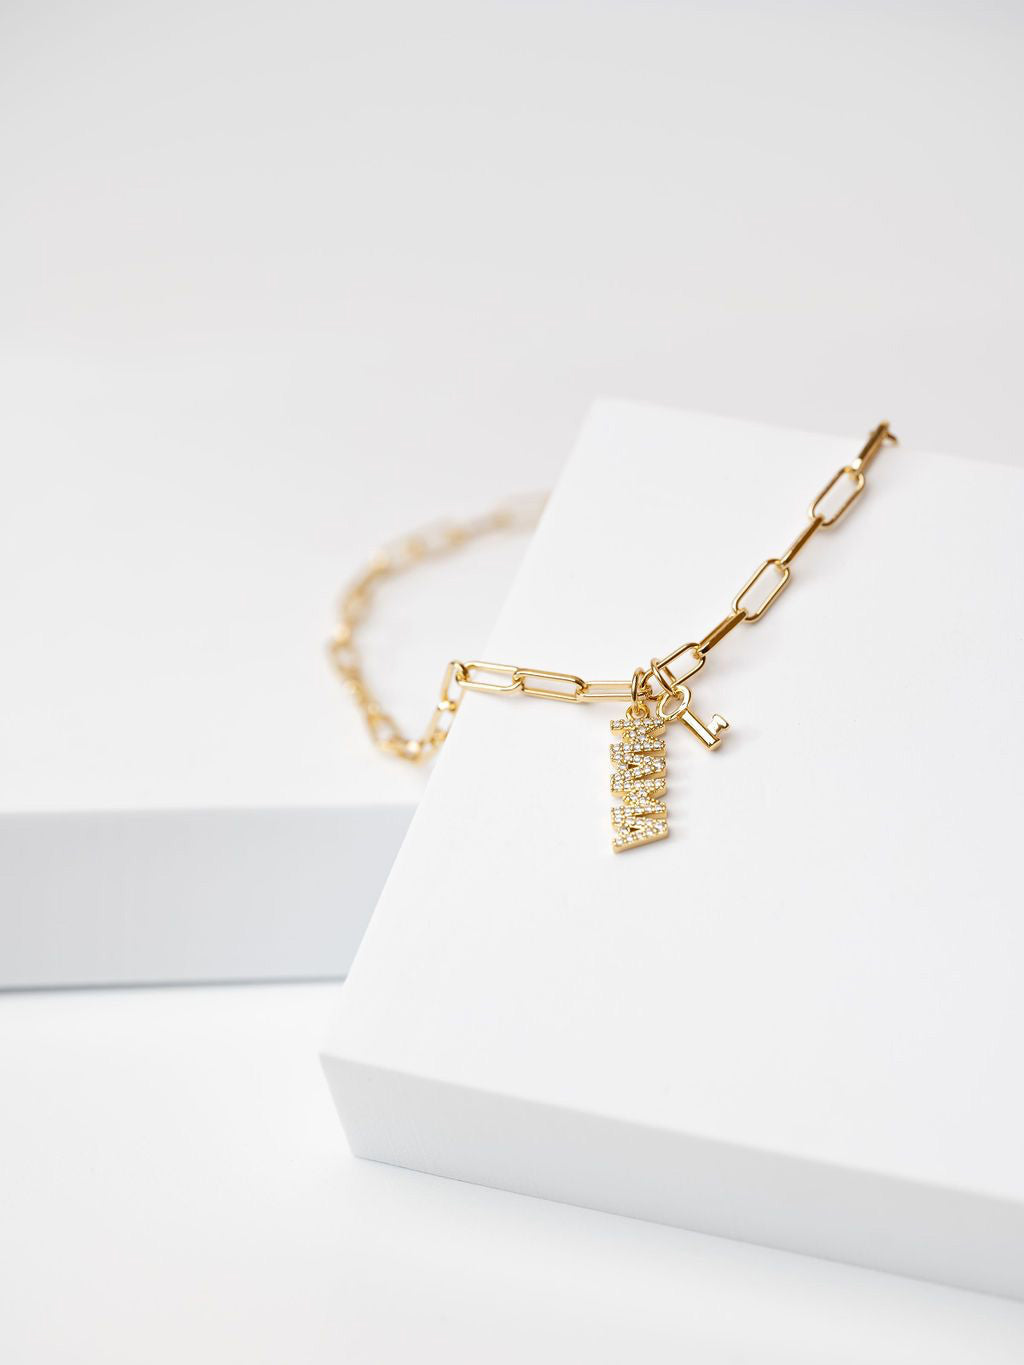 Bones necklace by Louis Vuitton, Louis Vuitton